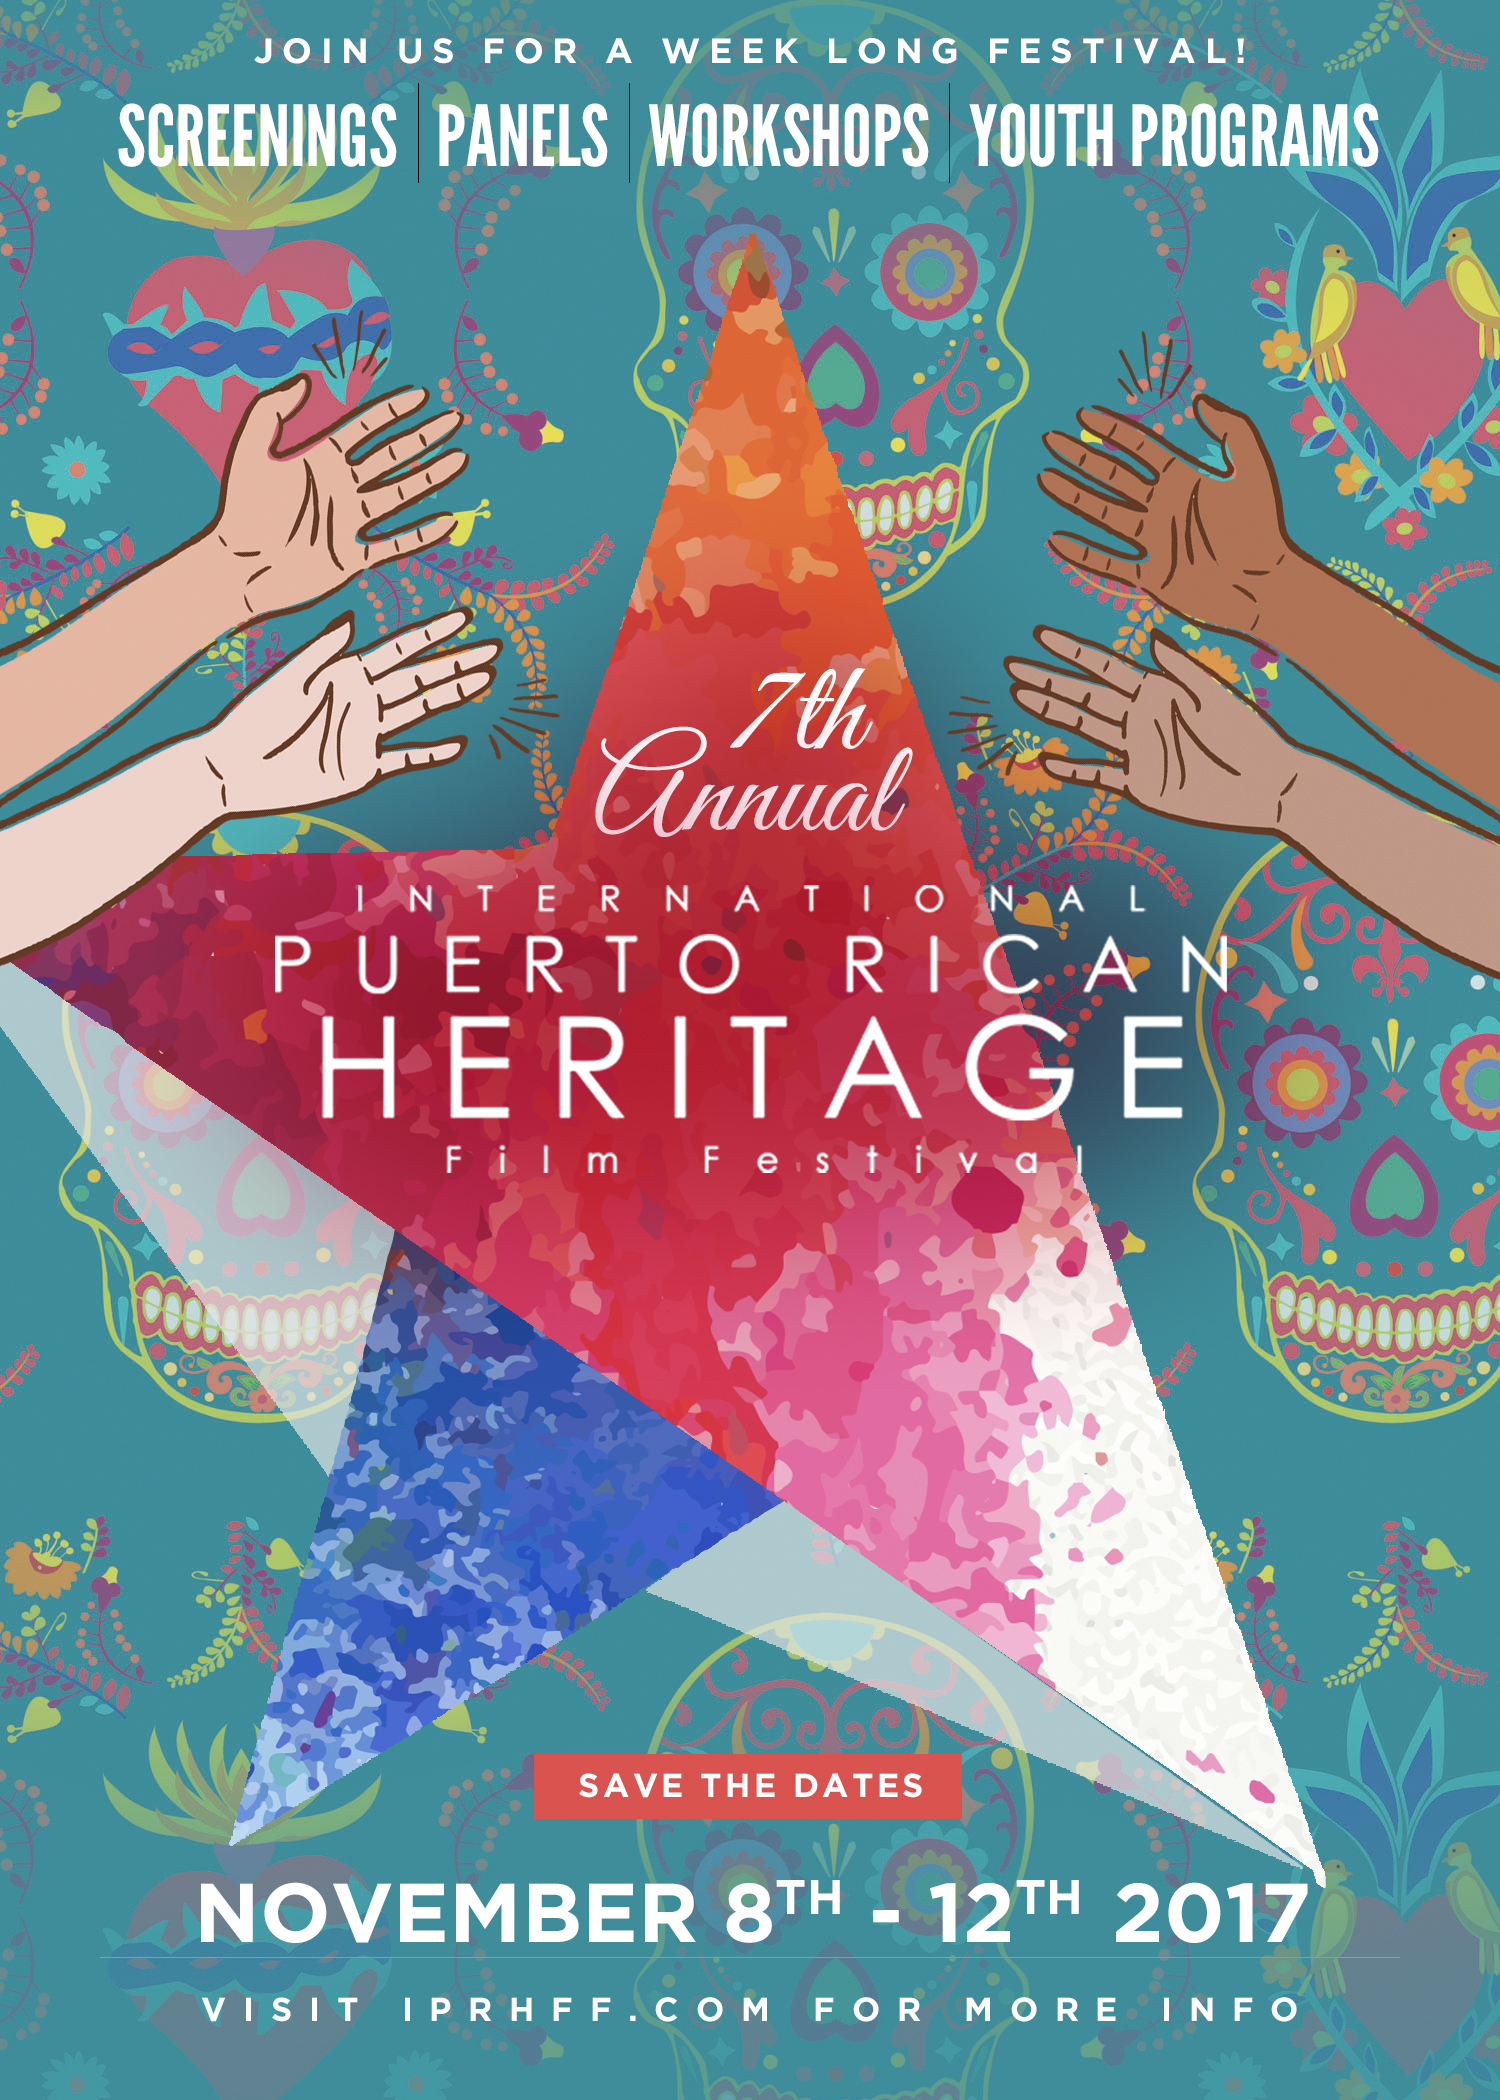 Titeres En El Caribe (Santo Domingo) - 7th Annual International Puerto Rican Heritage Film Festival